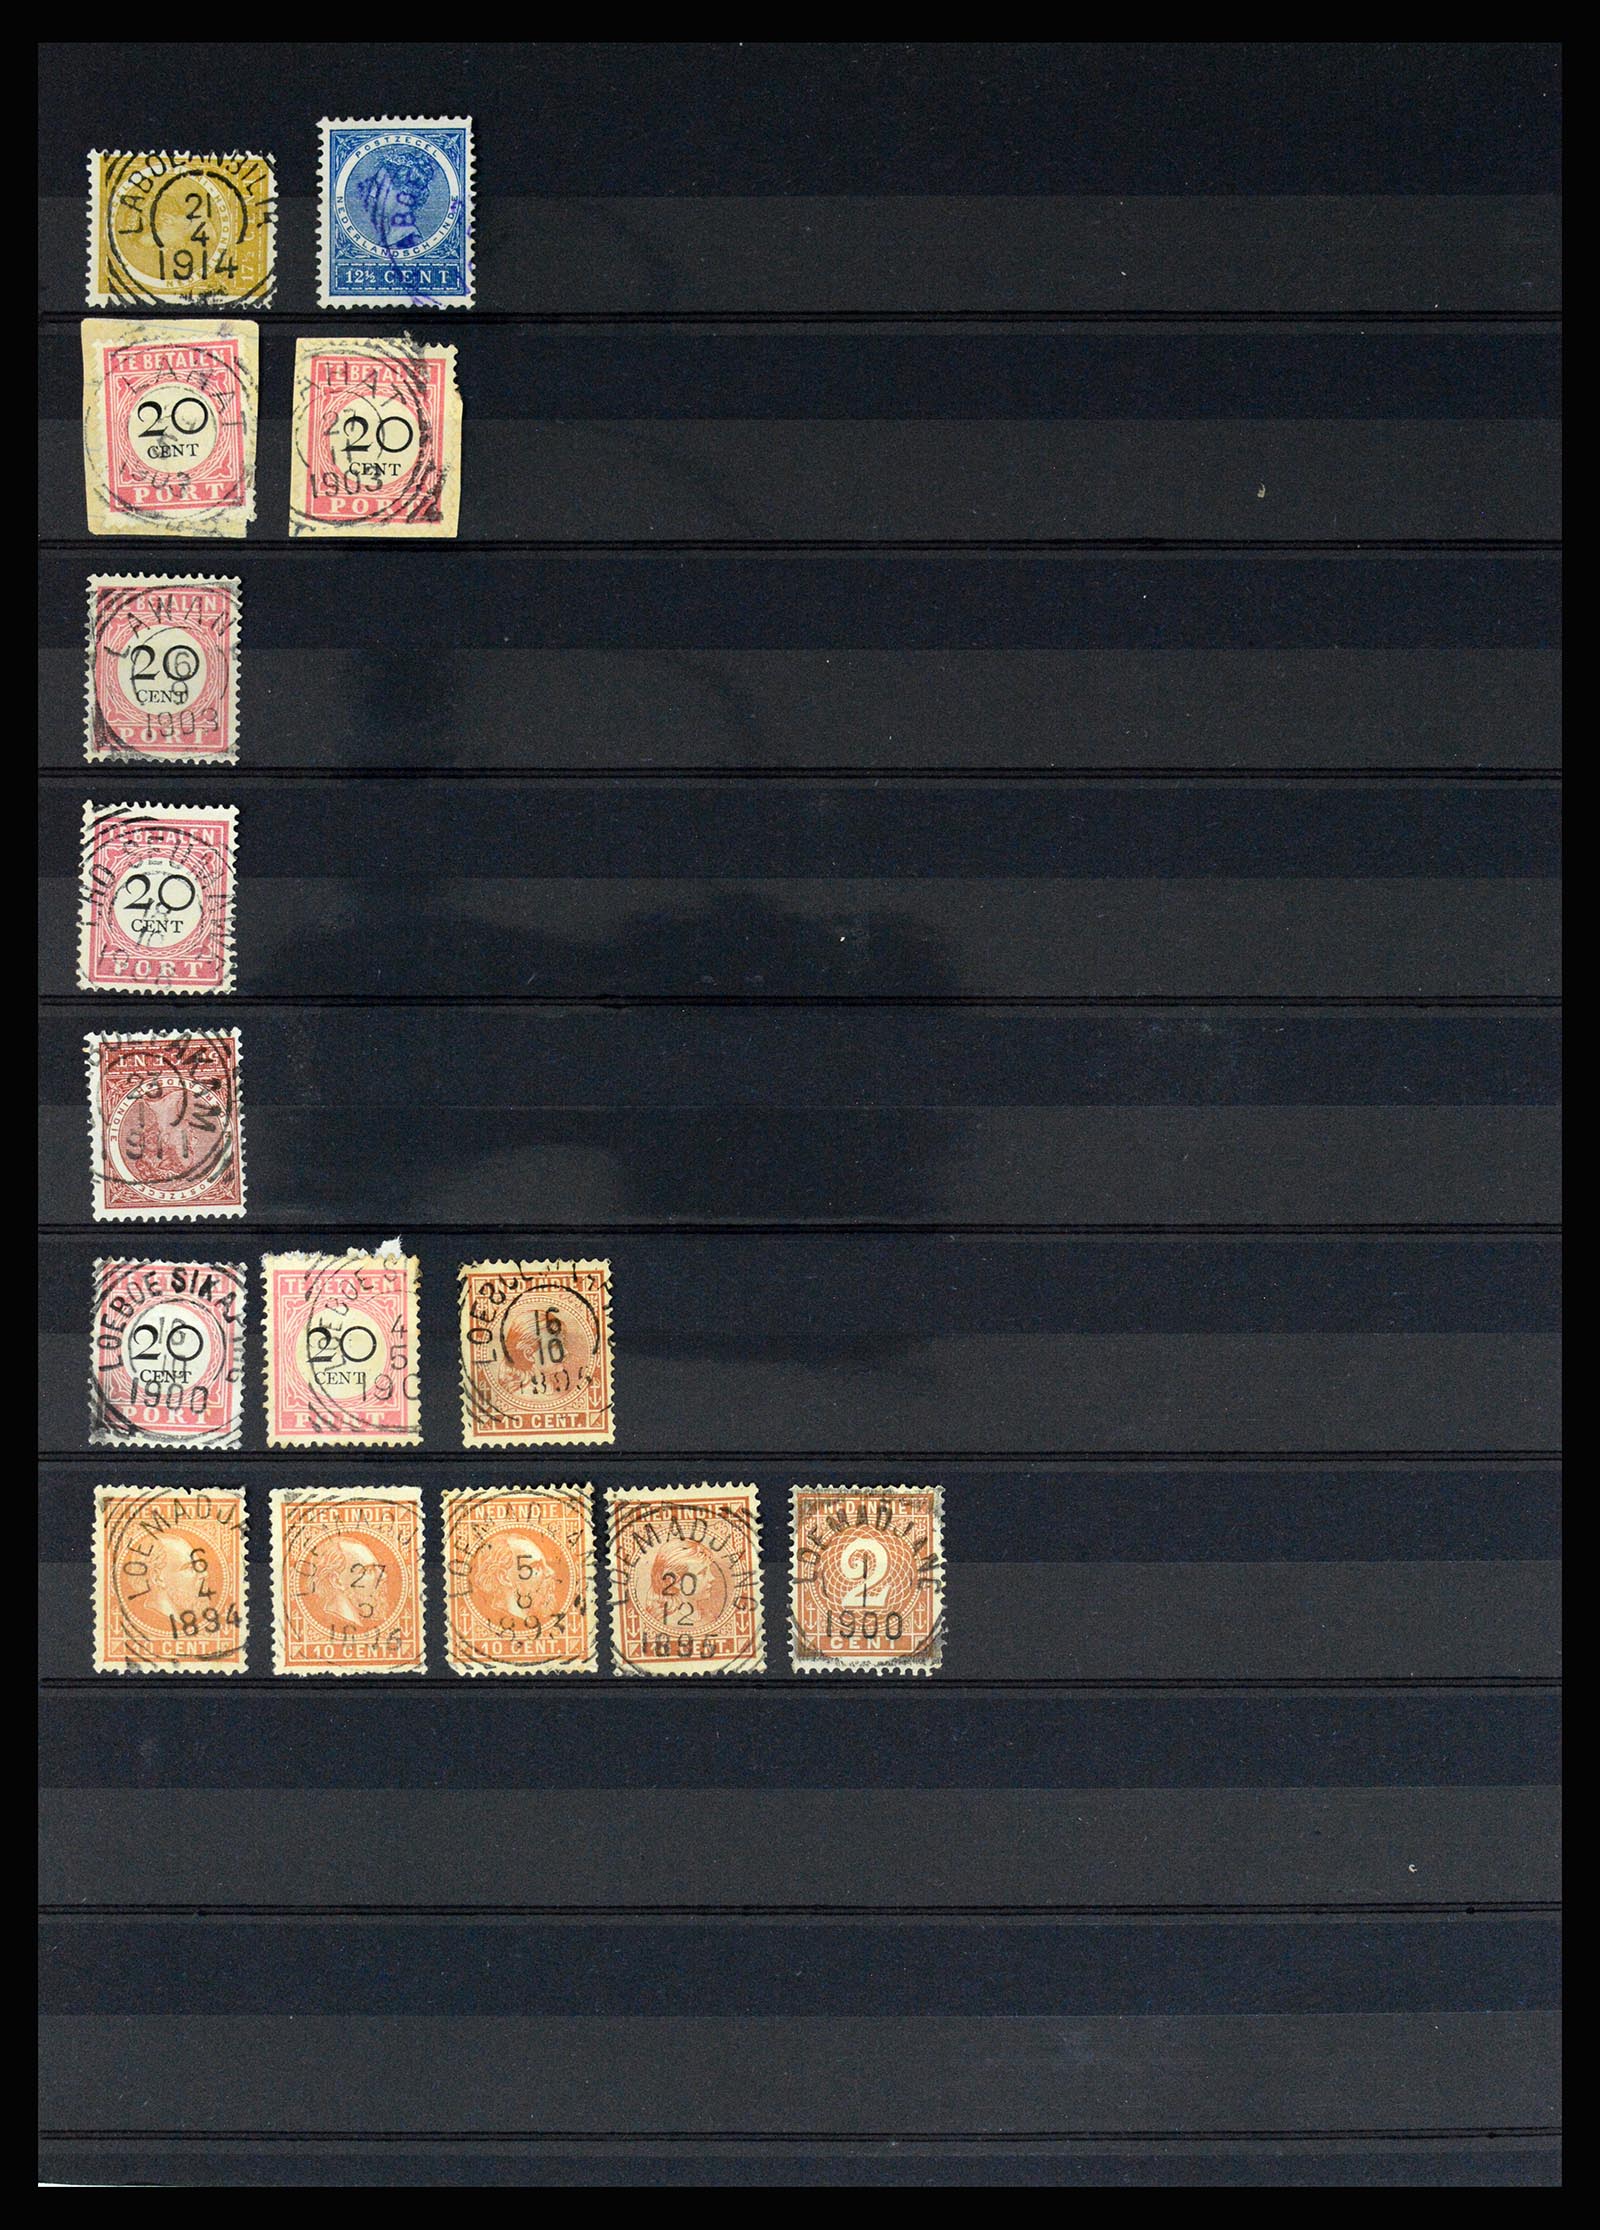 36512 089 - Stamp collection 36512 Nederlands Indië stempels 1872-1930.